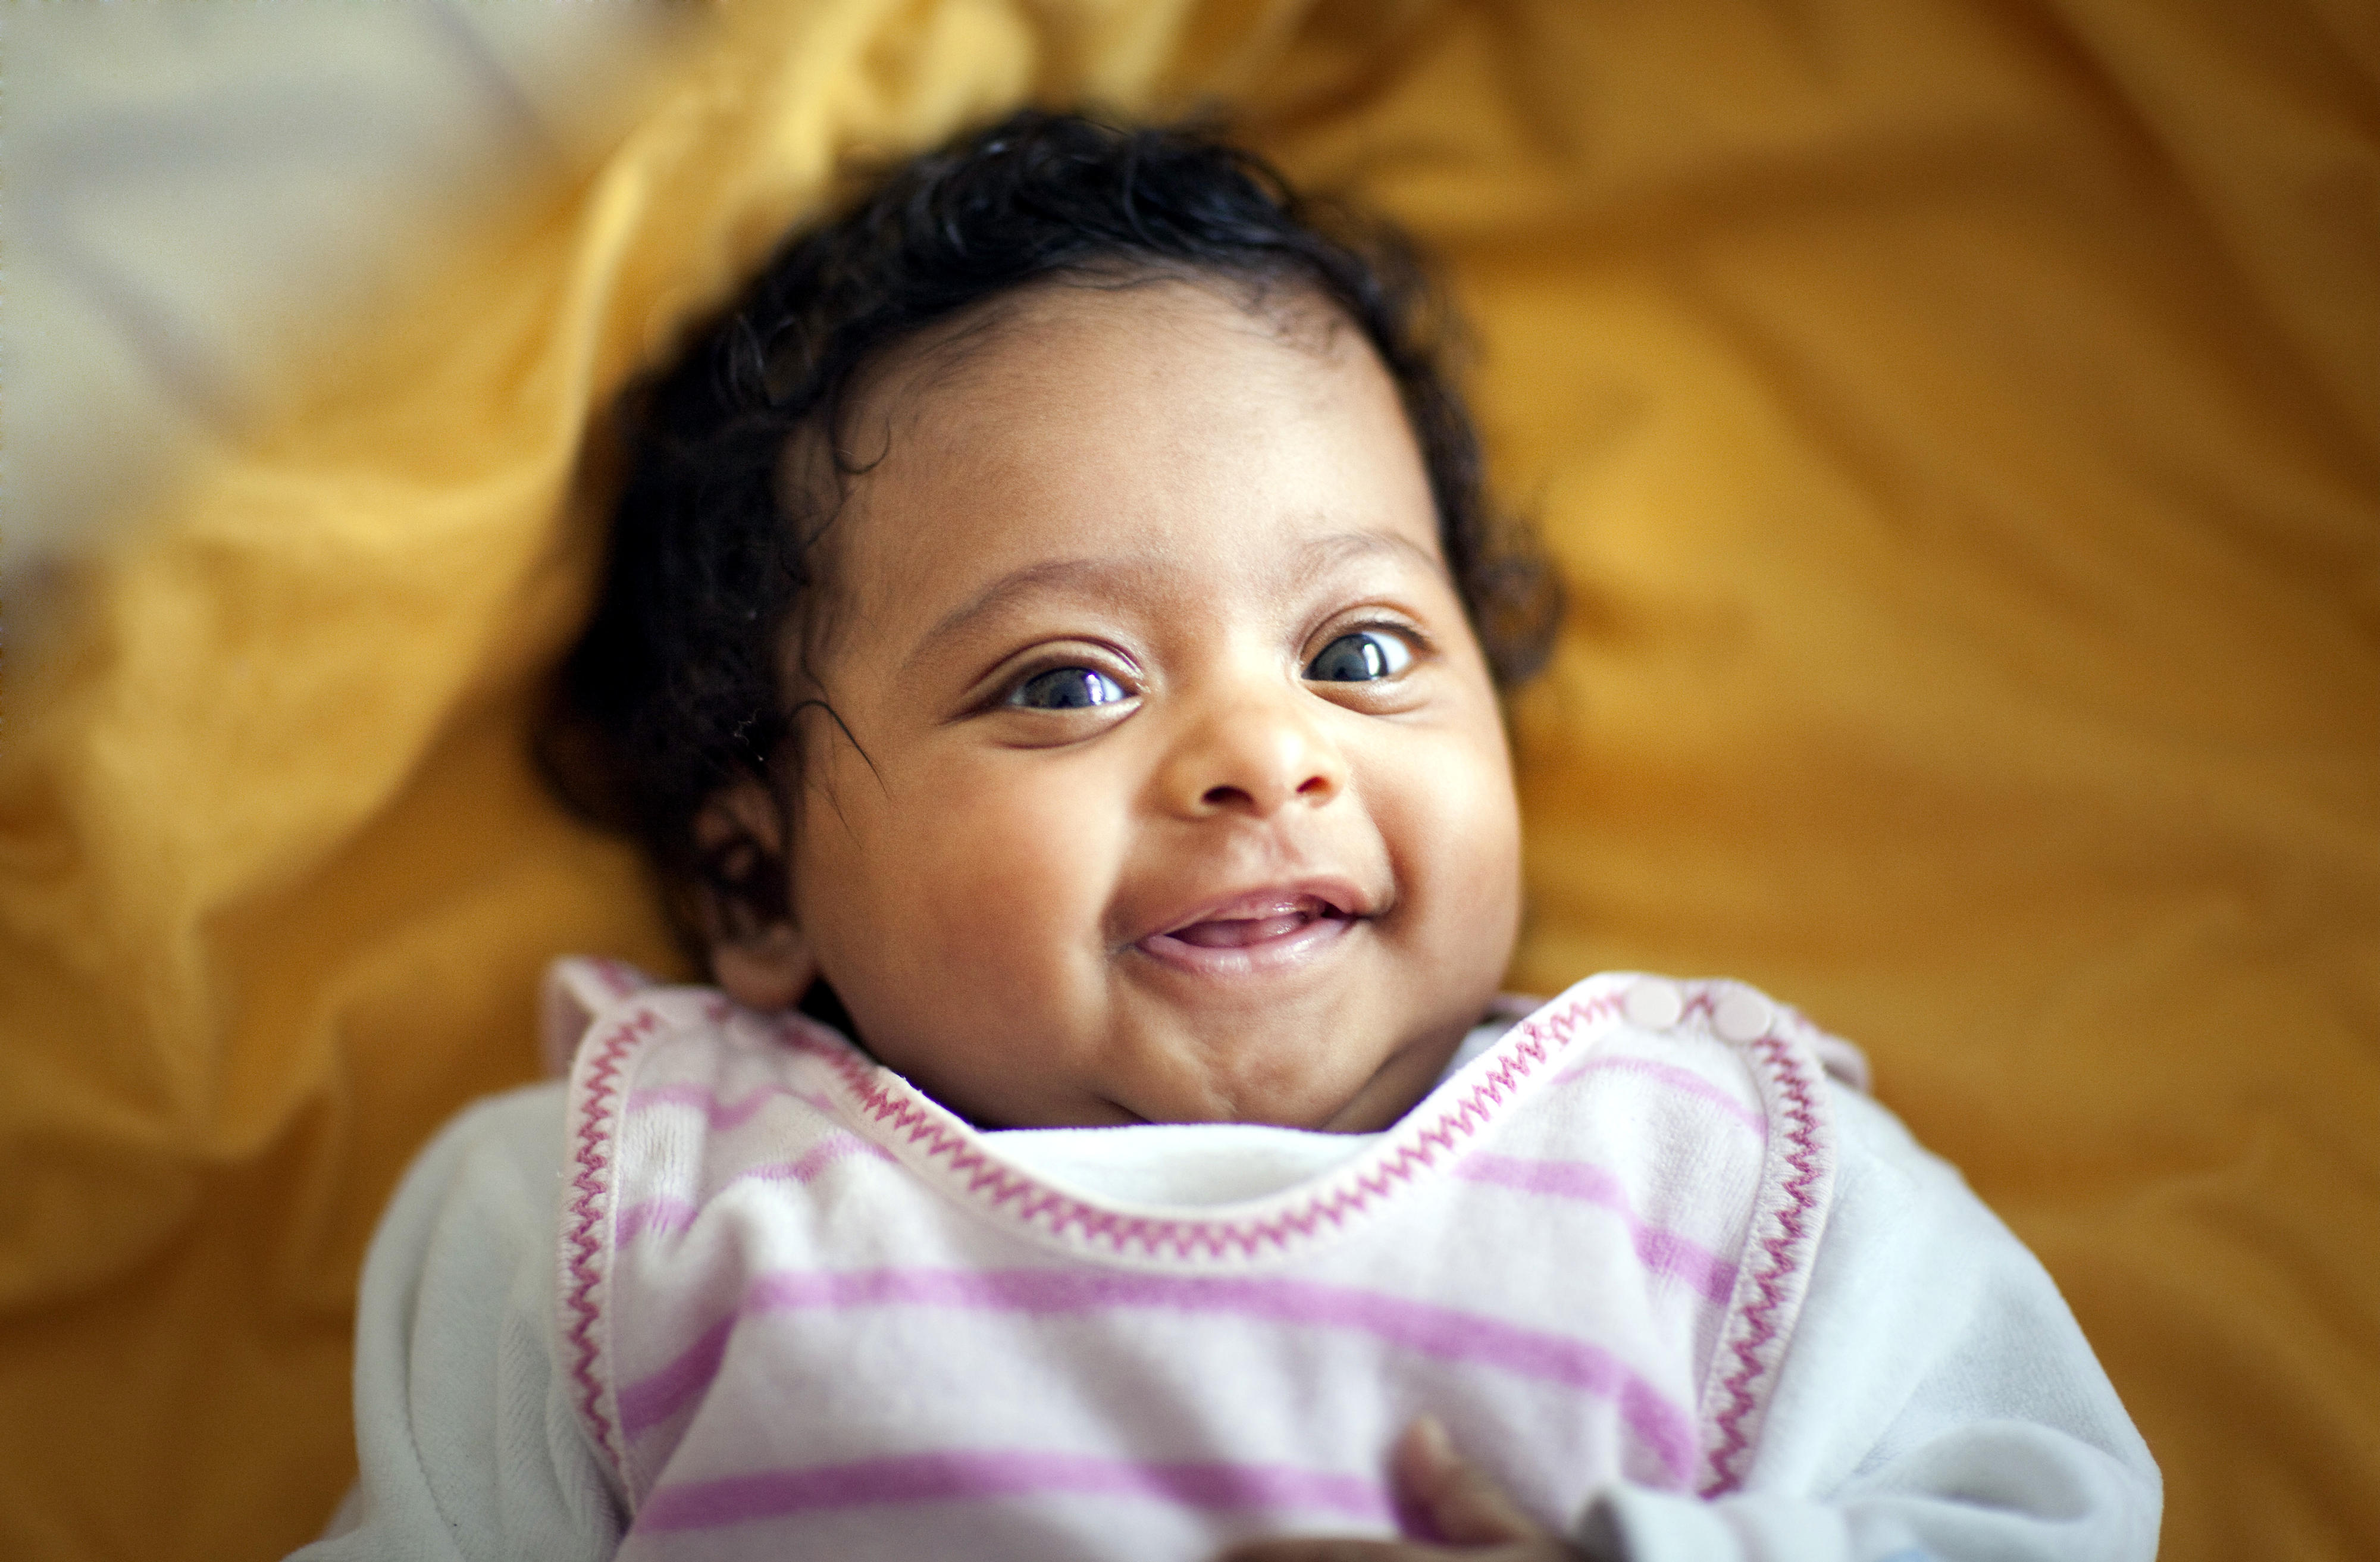 Säugling, drei Monate alt, aufgenommen in Bonn